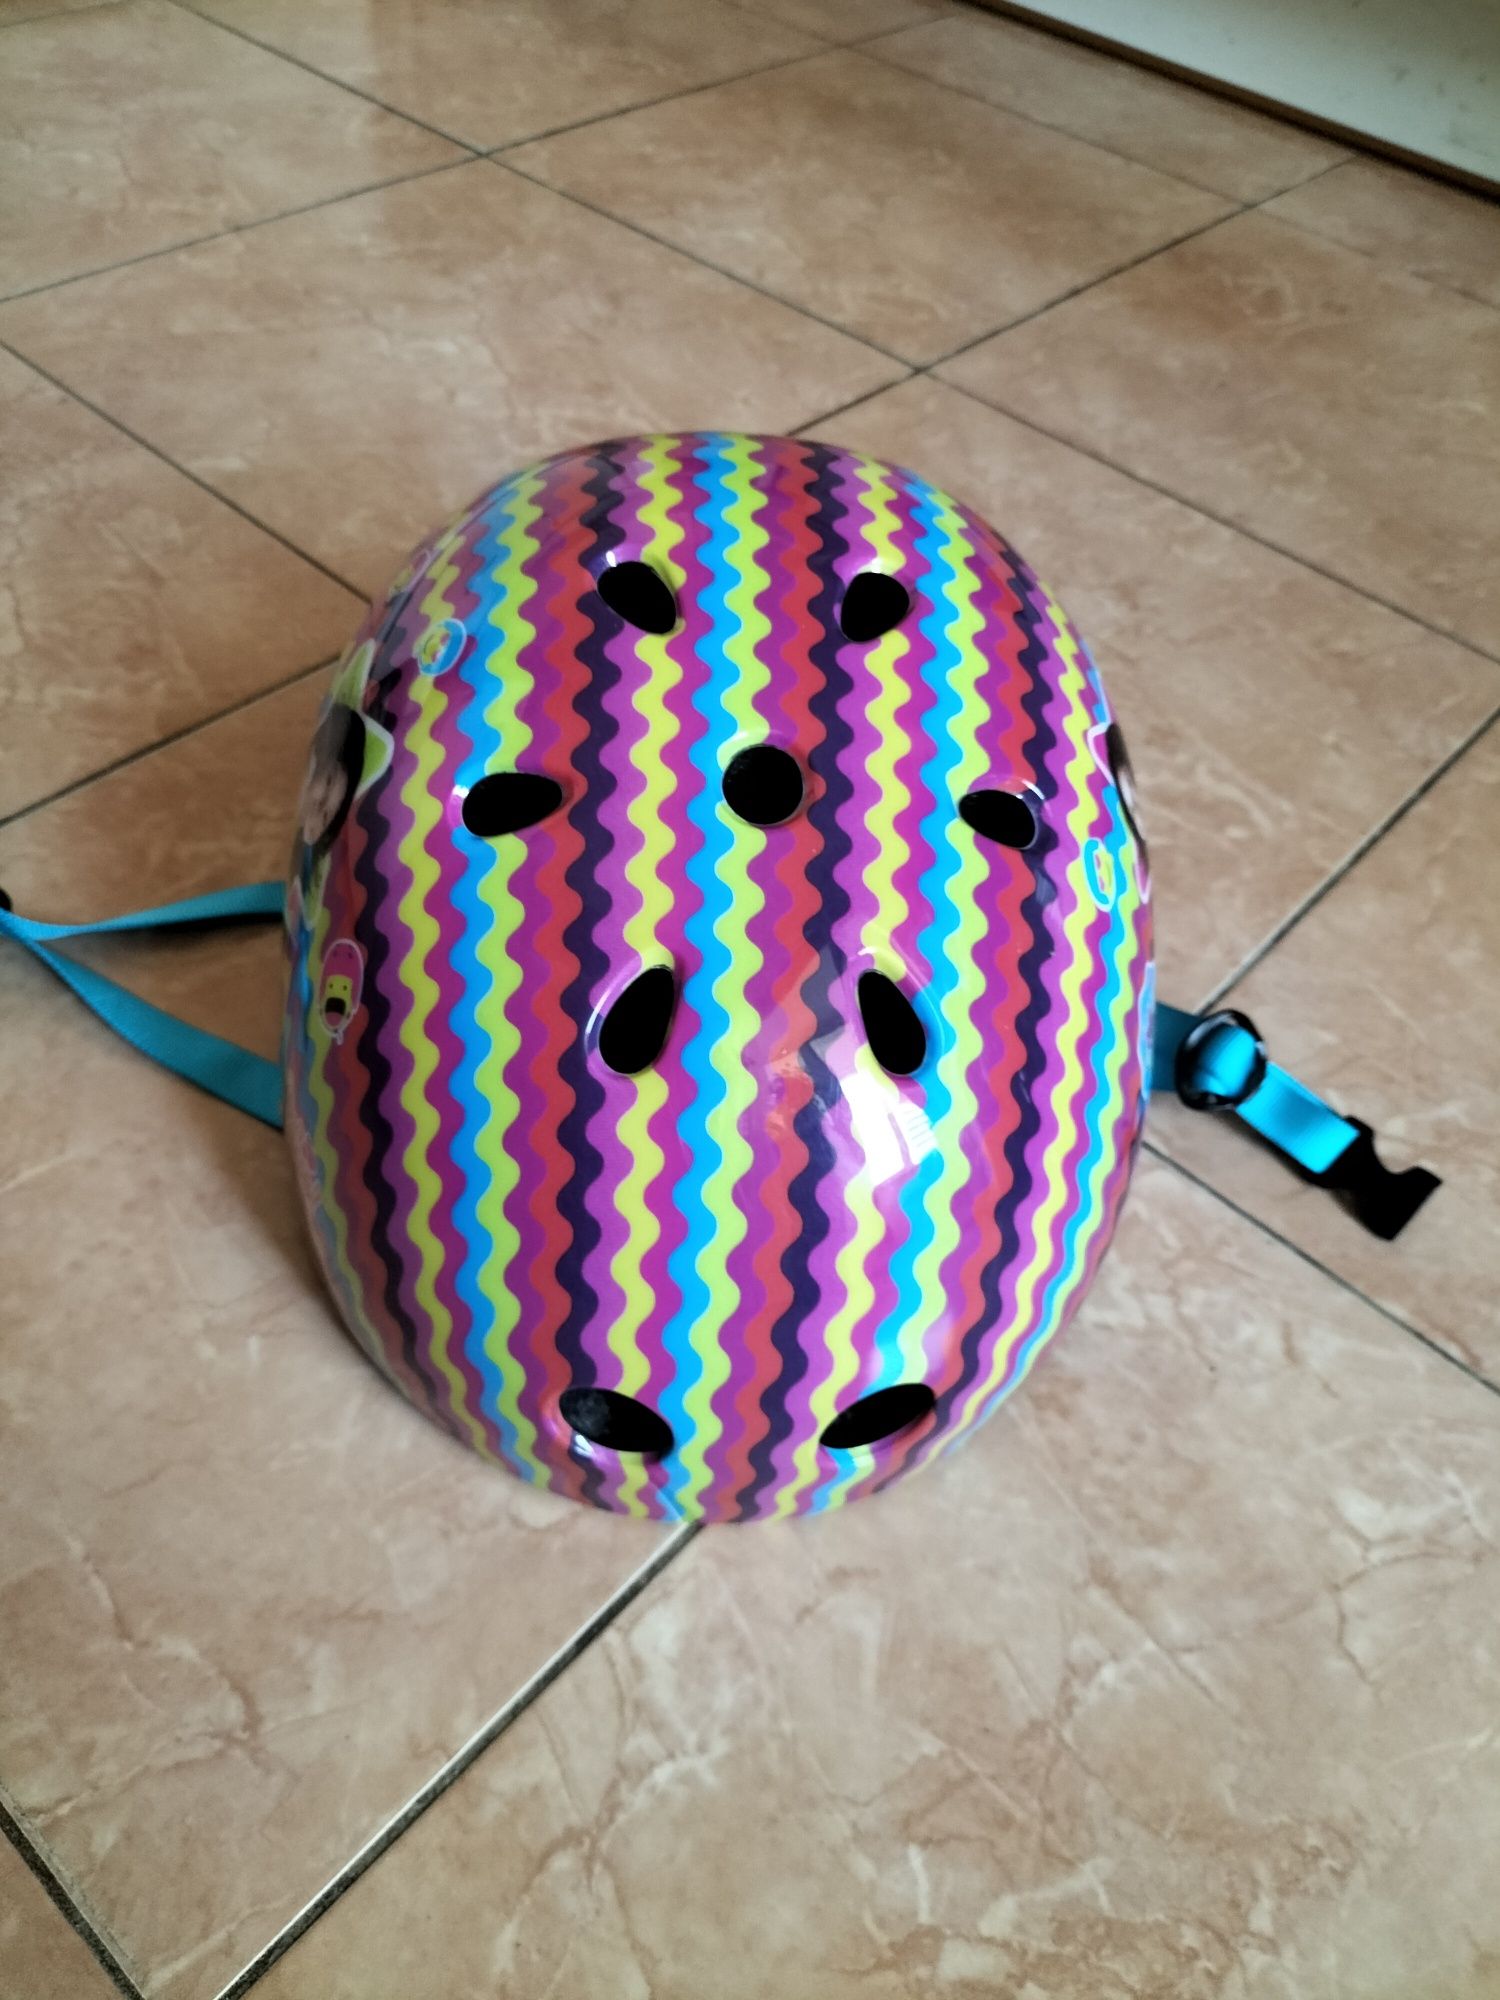 Шлем защитный роллер велосипедный самокат